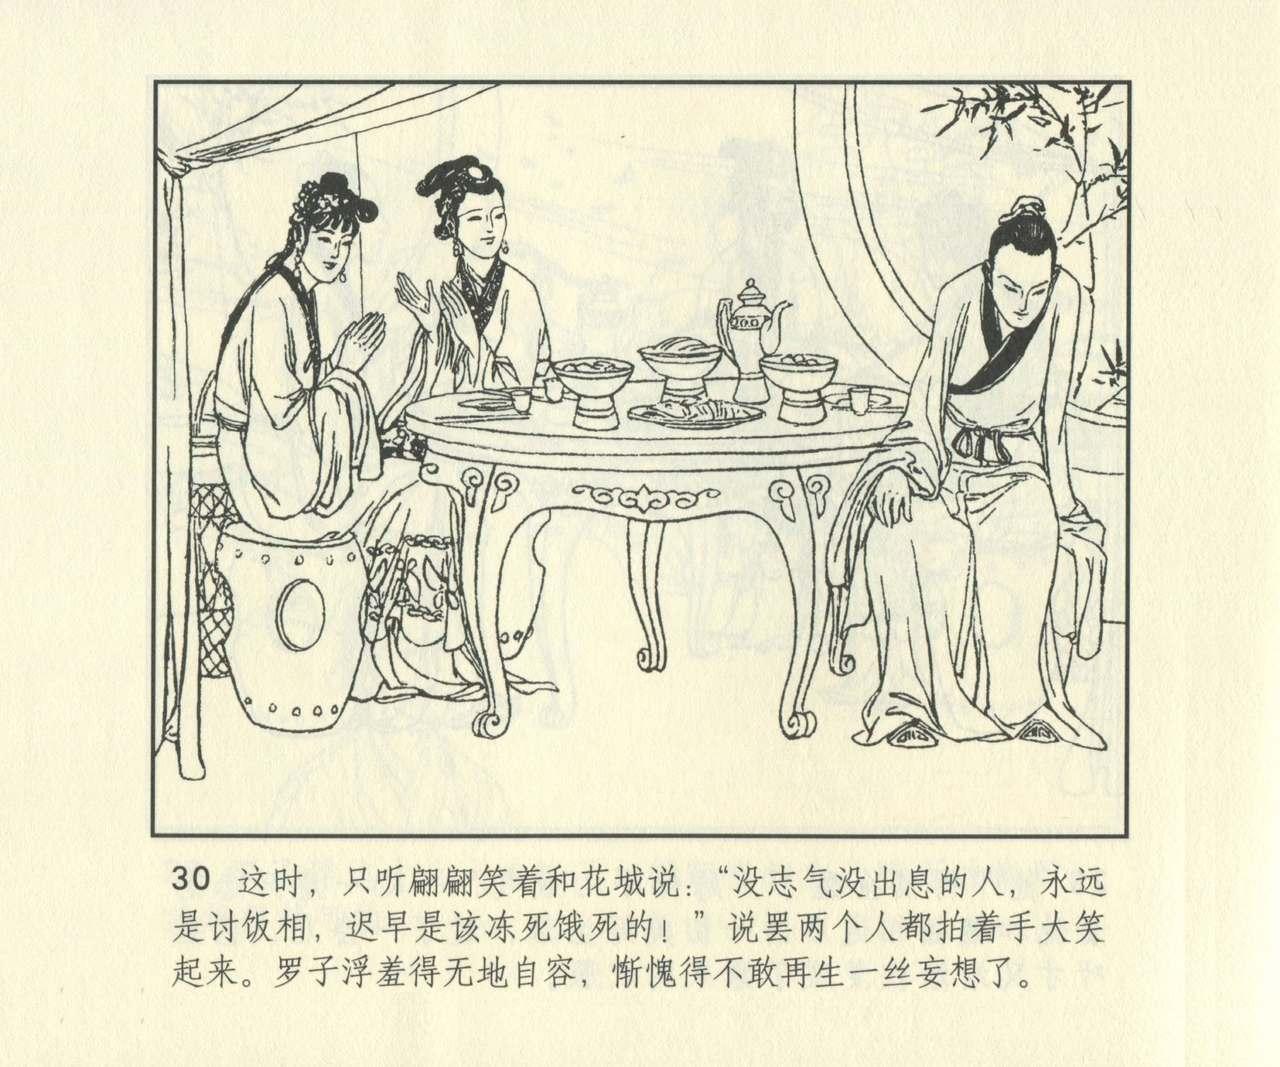 聊斋志异 张玮等绘 天津人民美术出版社 卷二十一 ~ 三十 646